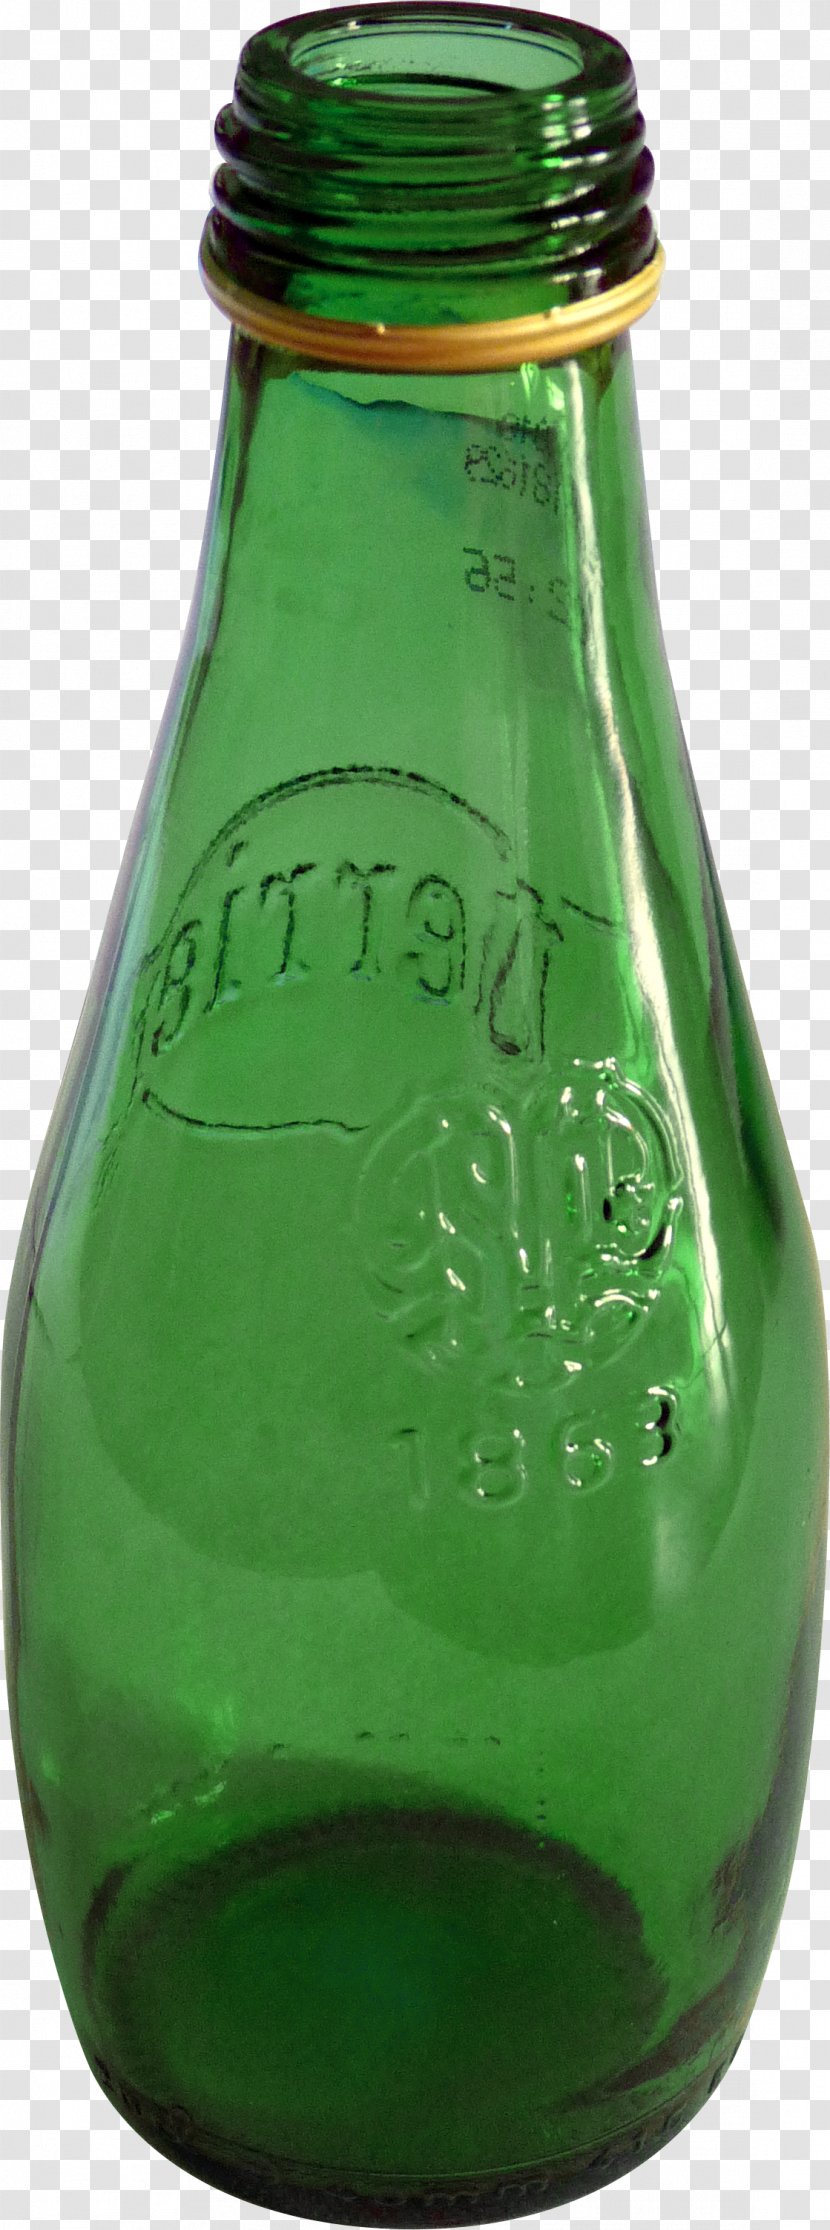 Beer Glass Bottle - Drinking - Green Bottles Transparent PNG